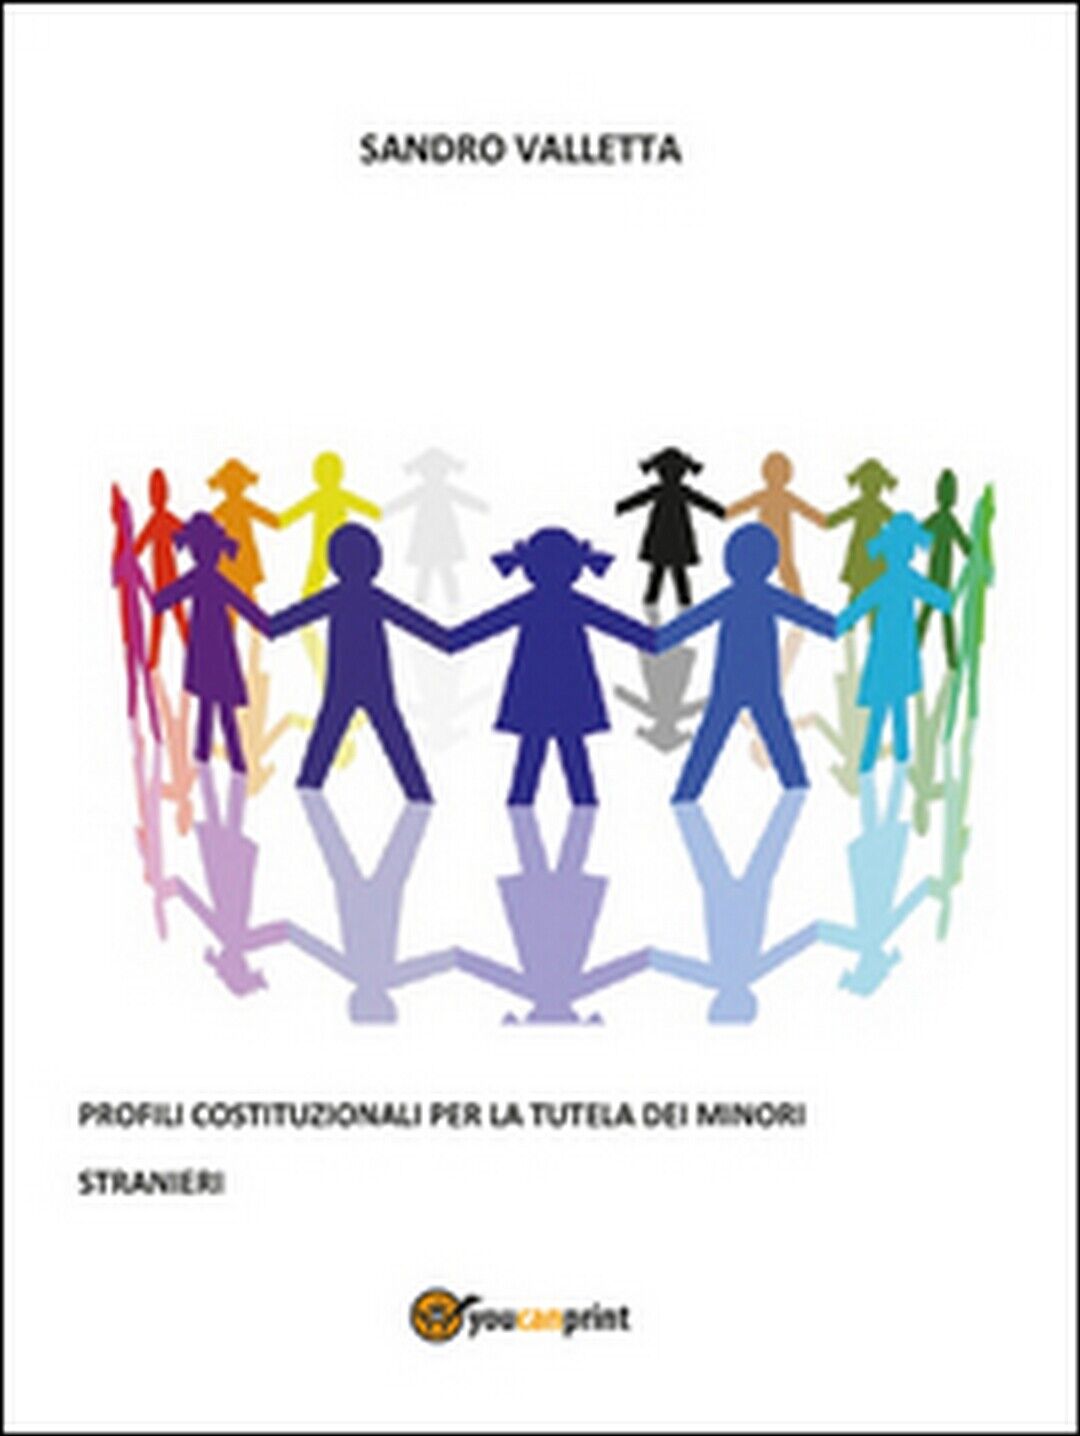 Profili costituzionali per la tutela dei minori stranieri  - Sandro Valletta